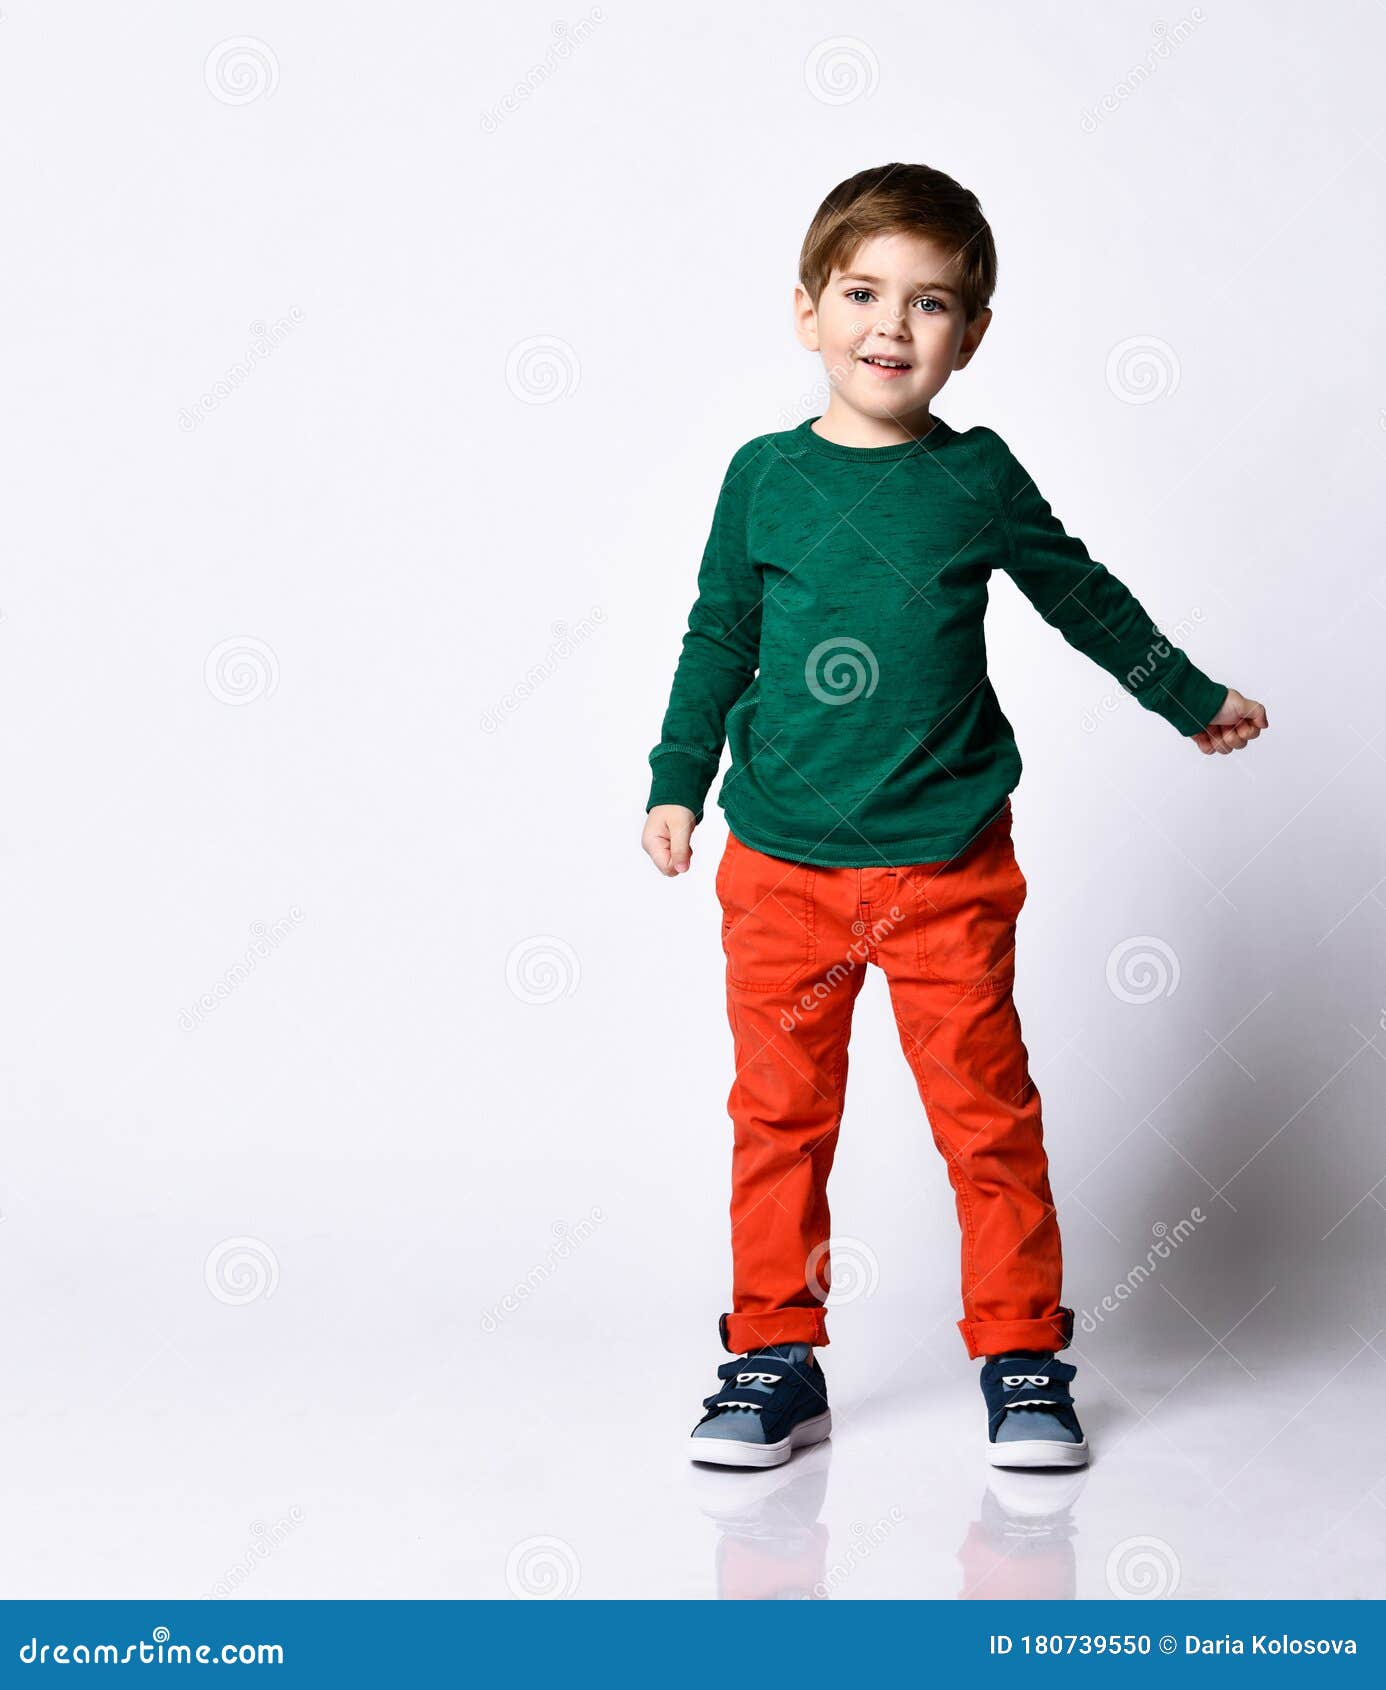 Niño Pequeño Con Pantalones De Naranja Y Zapatillas De Tenis Azules. él Está Sonriendo Mientras Posa Aislado En El Fondo Blanco Foto de archivo - Imagen de manera, feliz: